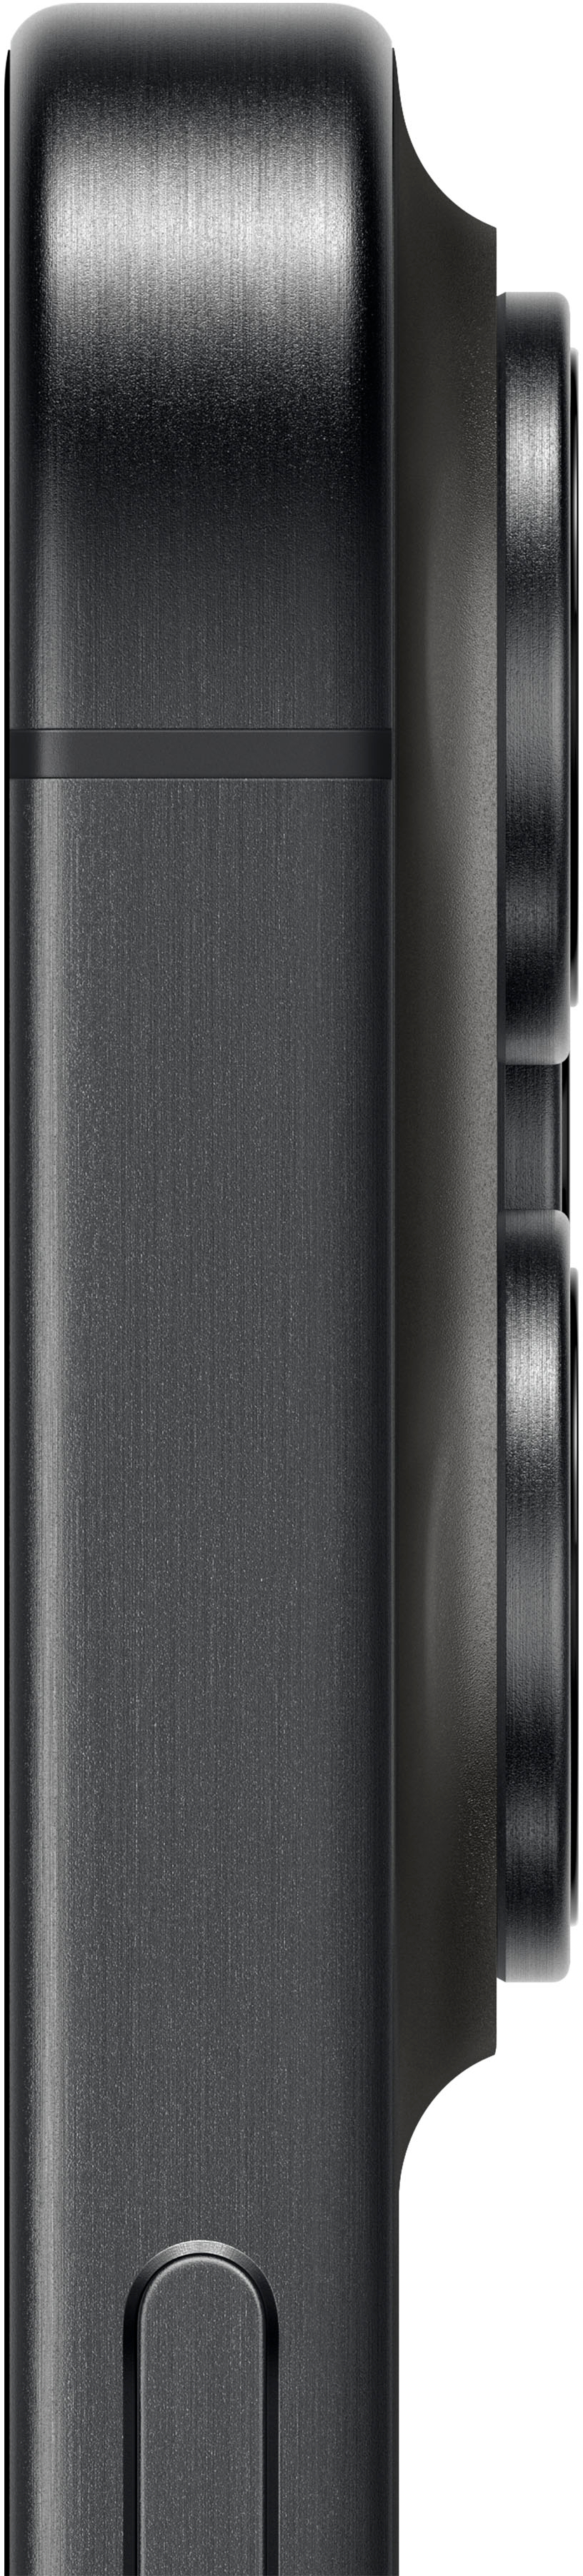 Apple iPhone 15 Pro Max 512GB Black Titanium (Verizon) MU6A3LL/A